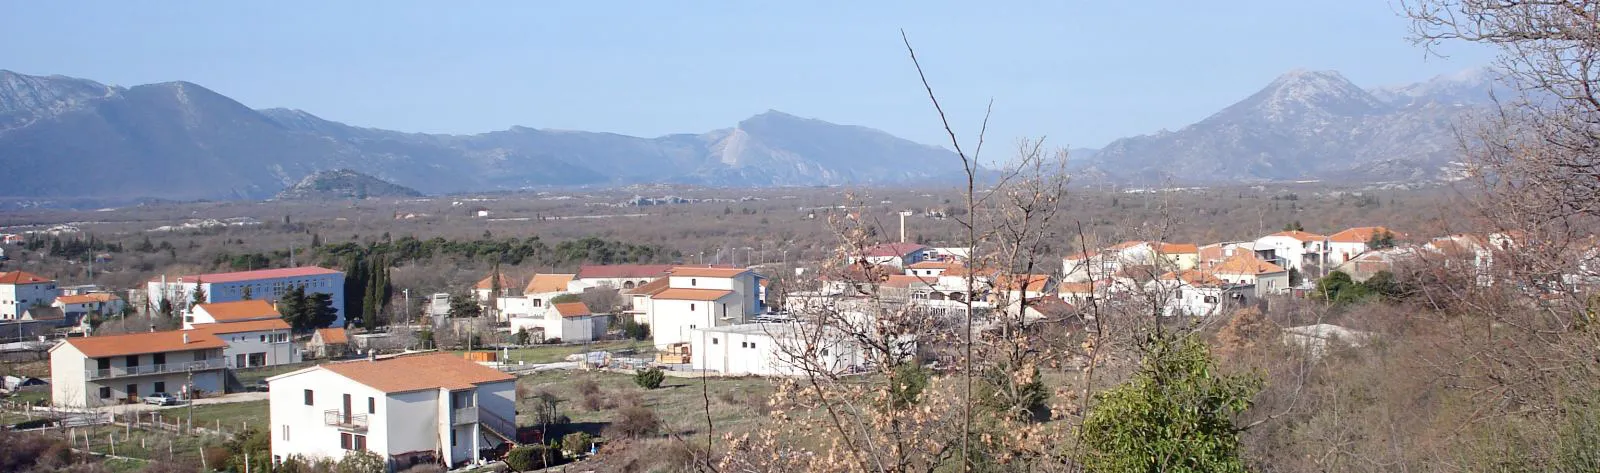 Photo showing: Šestanovac, a municipality in Croatia.